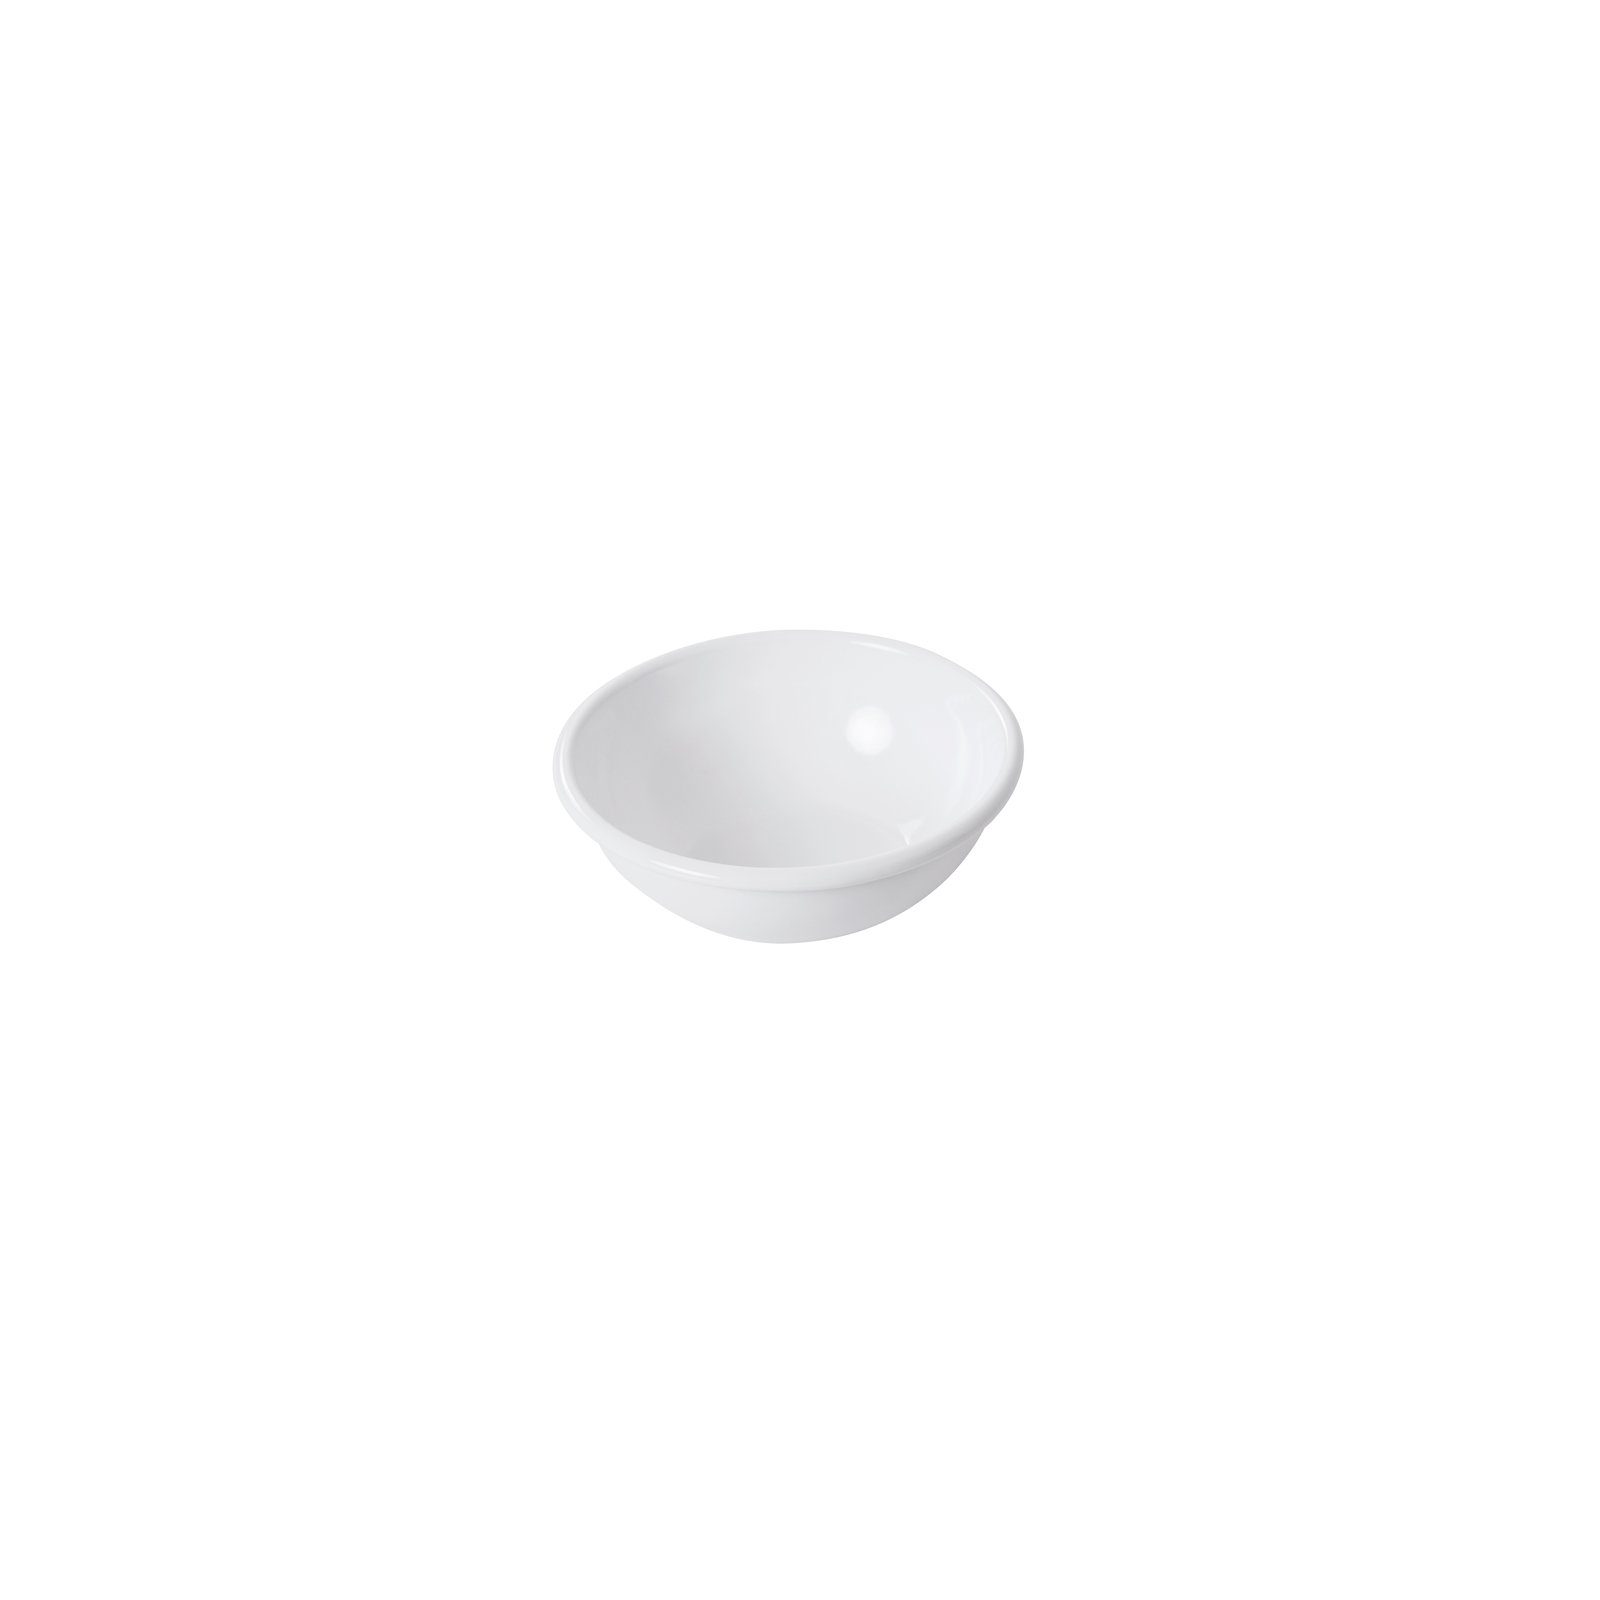 Classic Weiß, Riess Küchenschüssel Emaille Salatschüssel